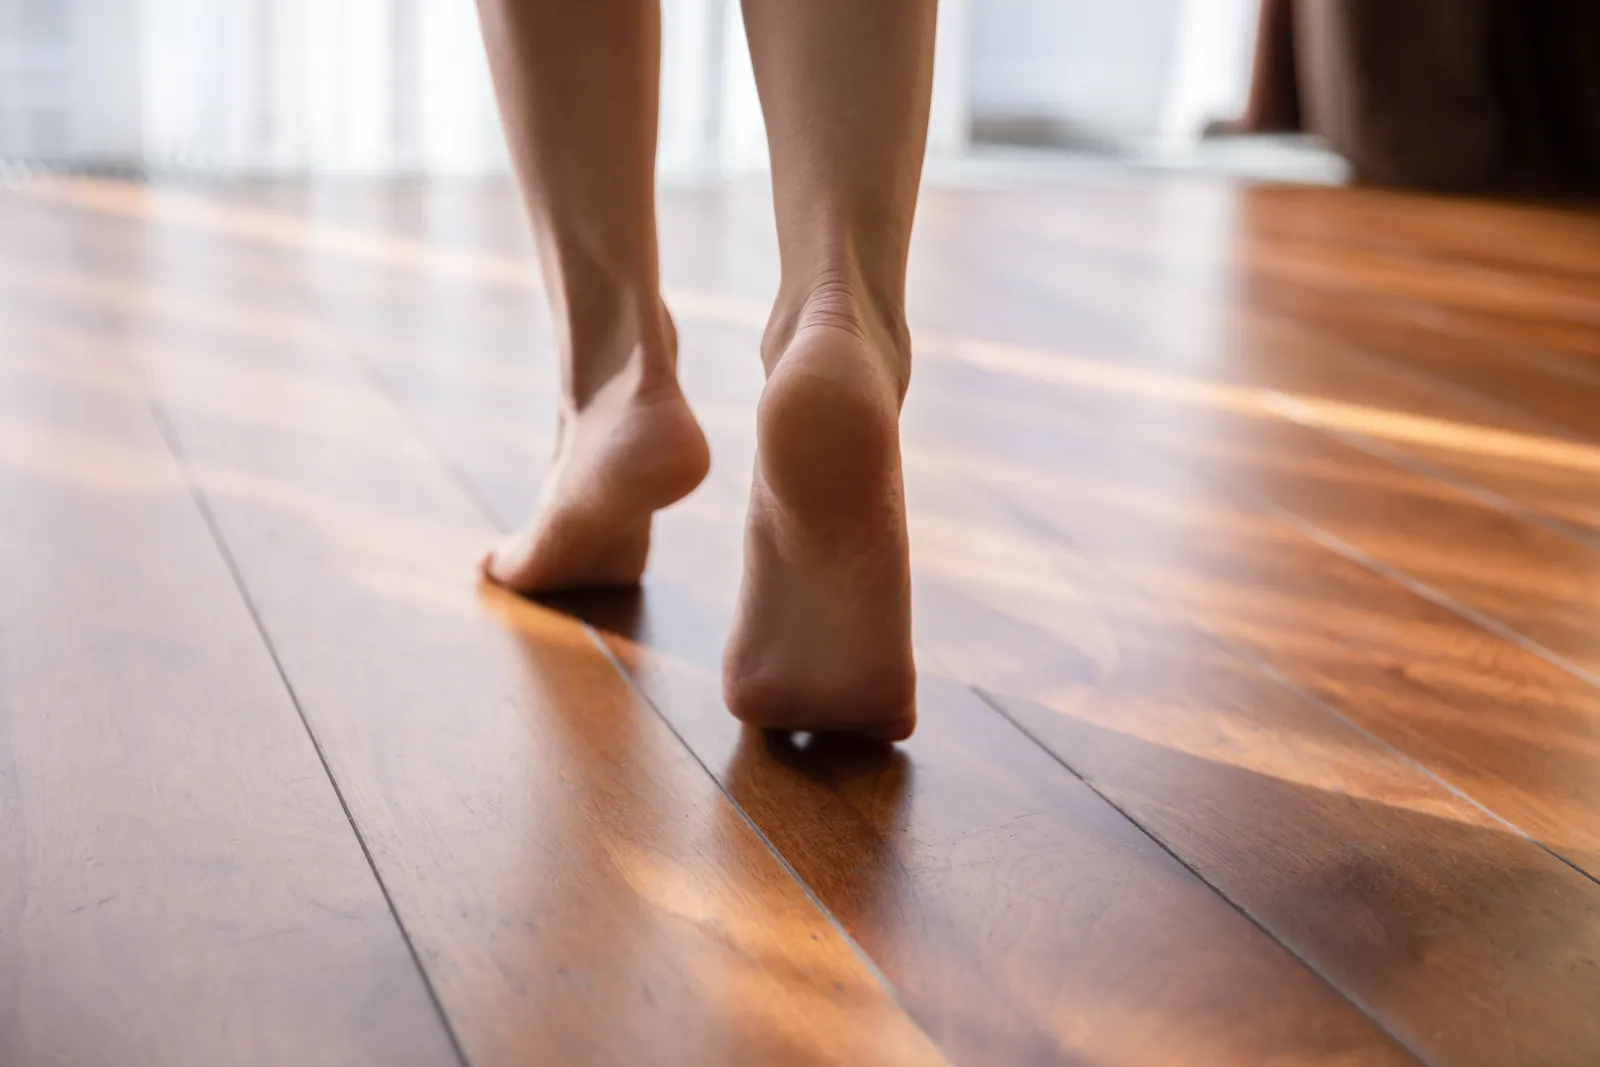 feet walking on a floor